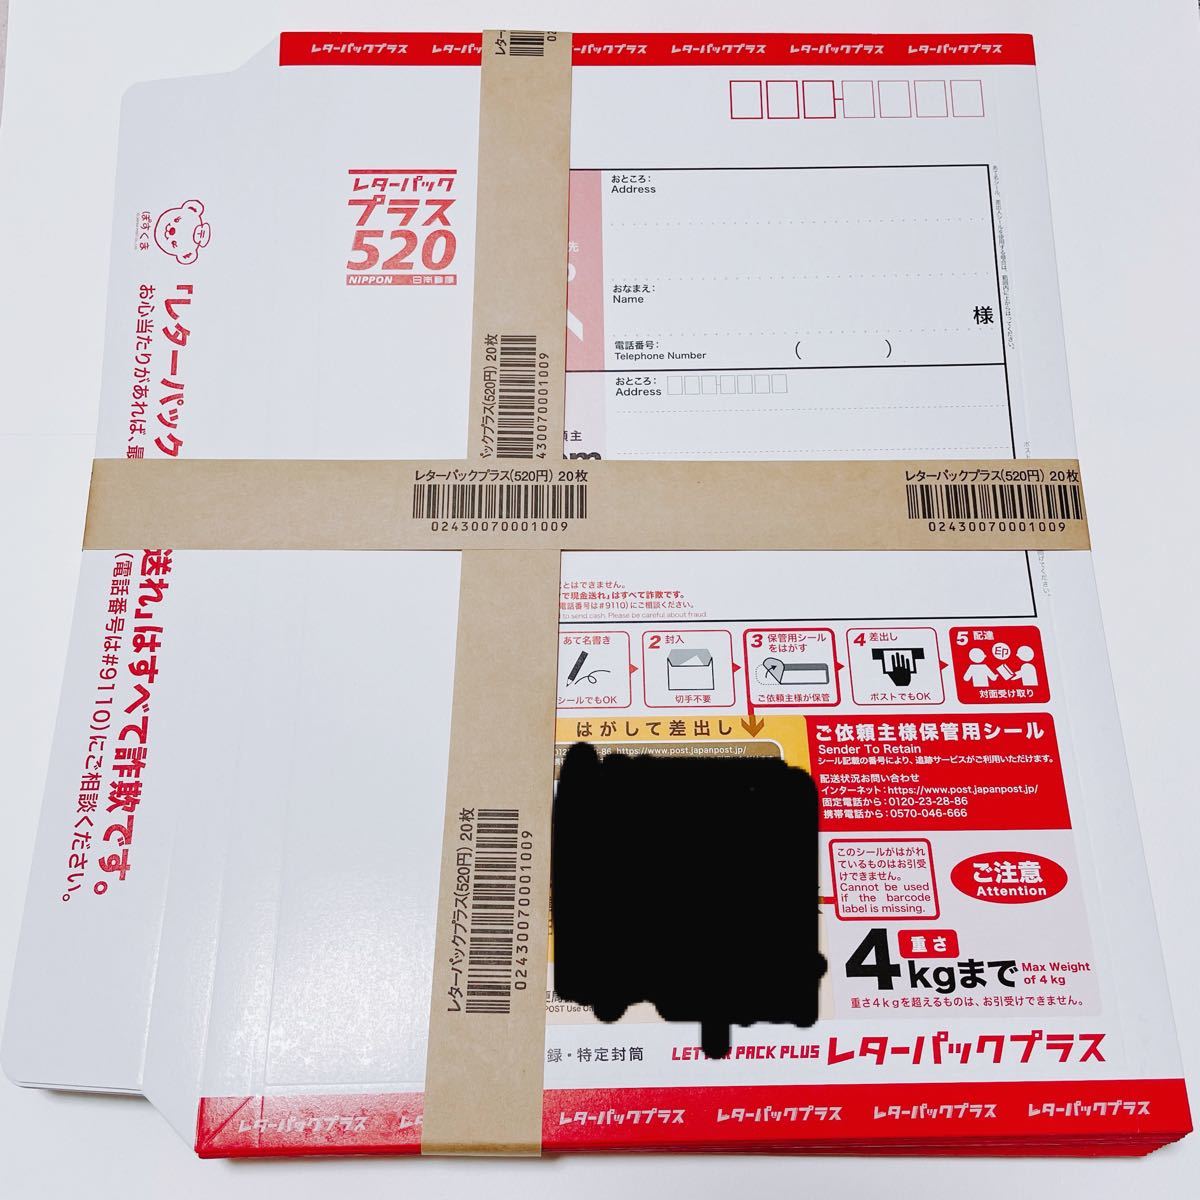 クーポン超特価 レターパックプラス 日本郵便 520 20枚 セット 520円 